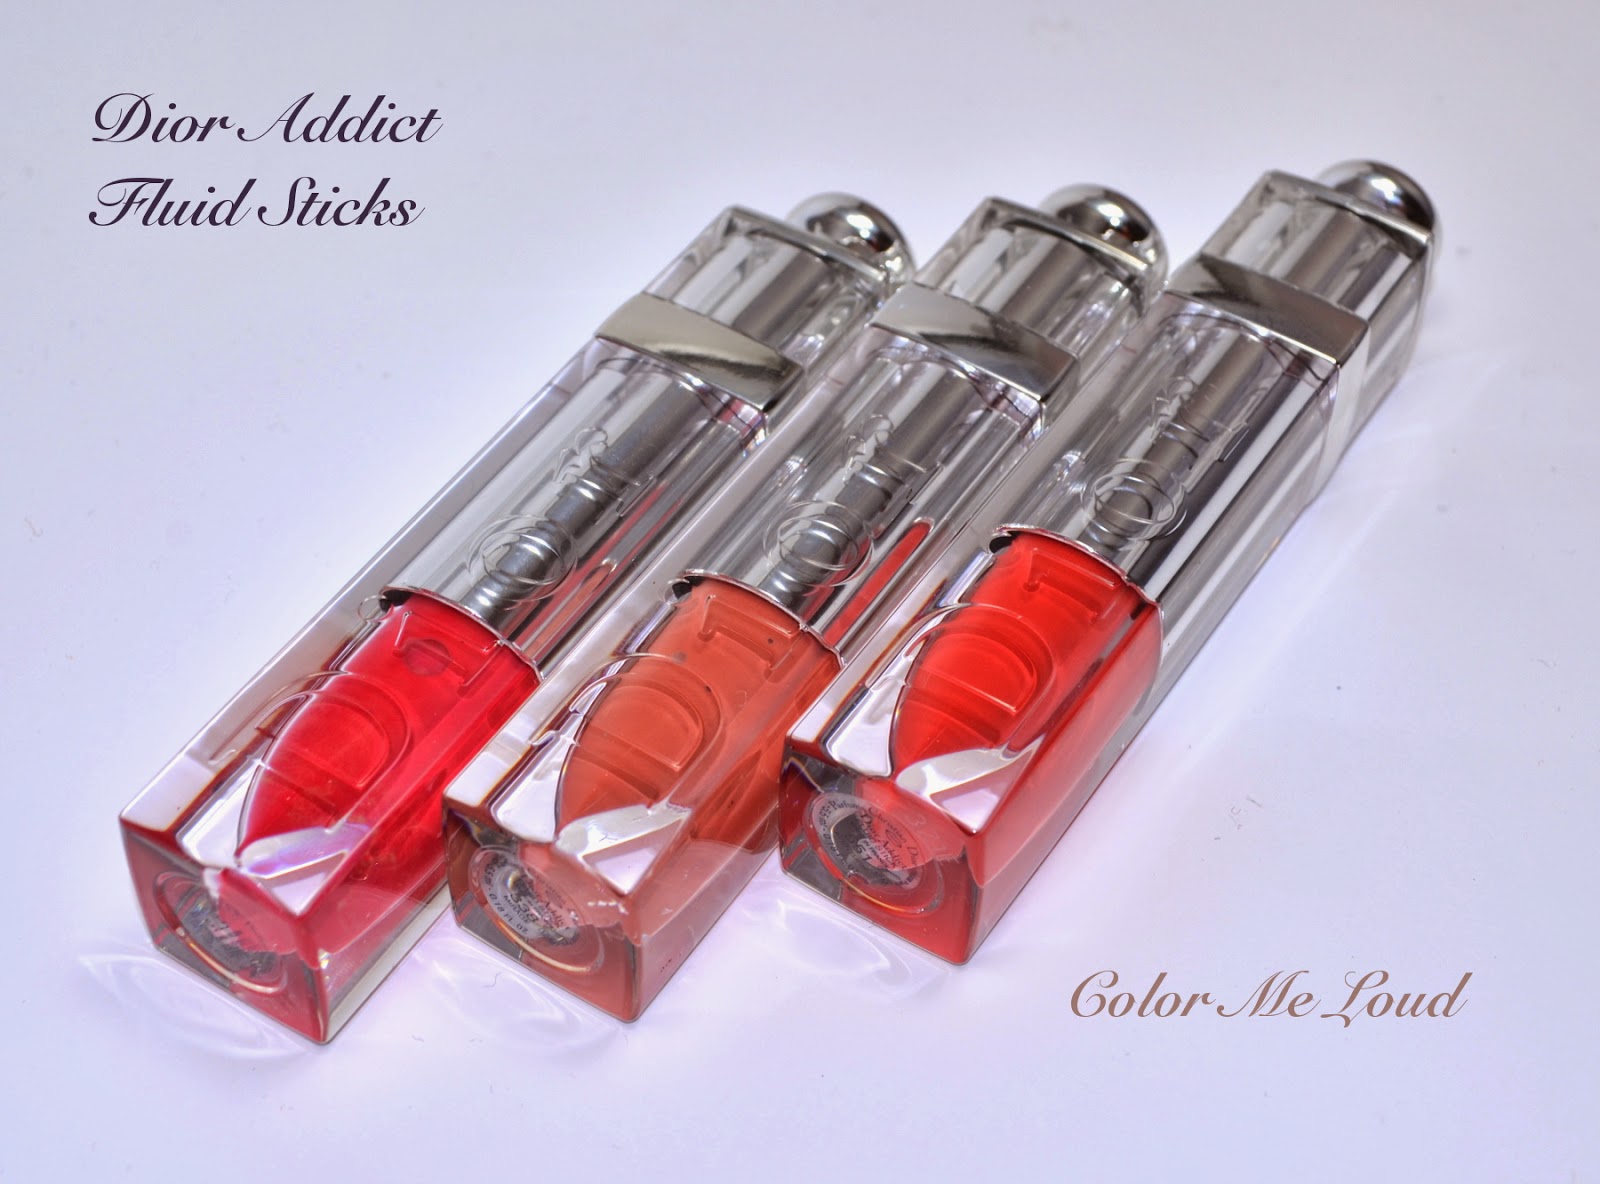 Dior Addict Fluid Sticks #338 Mirage, #551 Aventure and #575 Wonderland, Swatches & Comparison